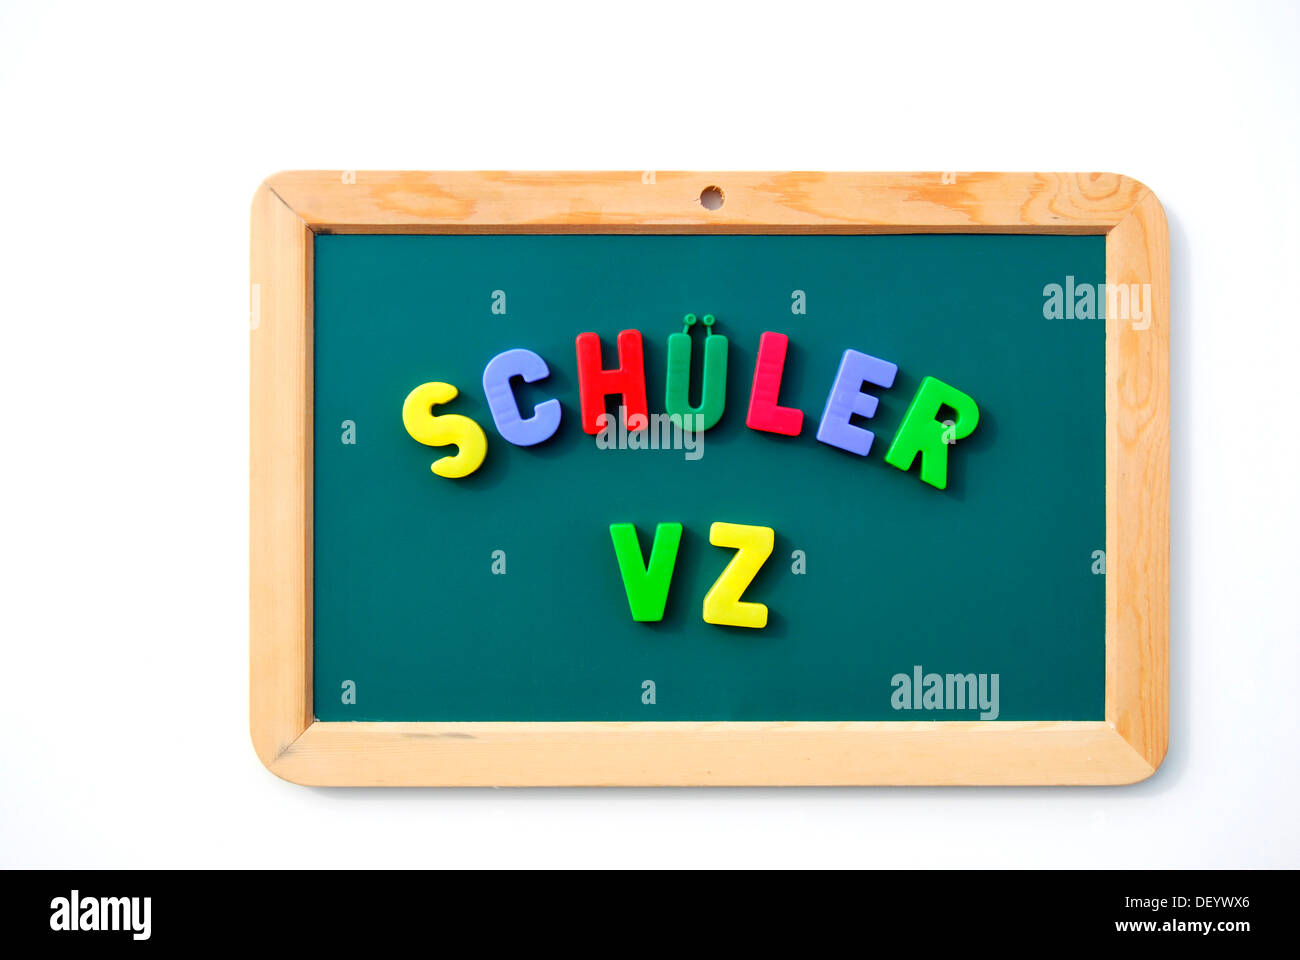 Schueler VZ, écrit avec des lettres magnétiques sur un tableau noir de l'enfant, une communauté en ligne pour les enfants de l'école allemande Banque D'Images